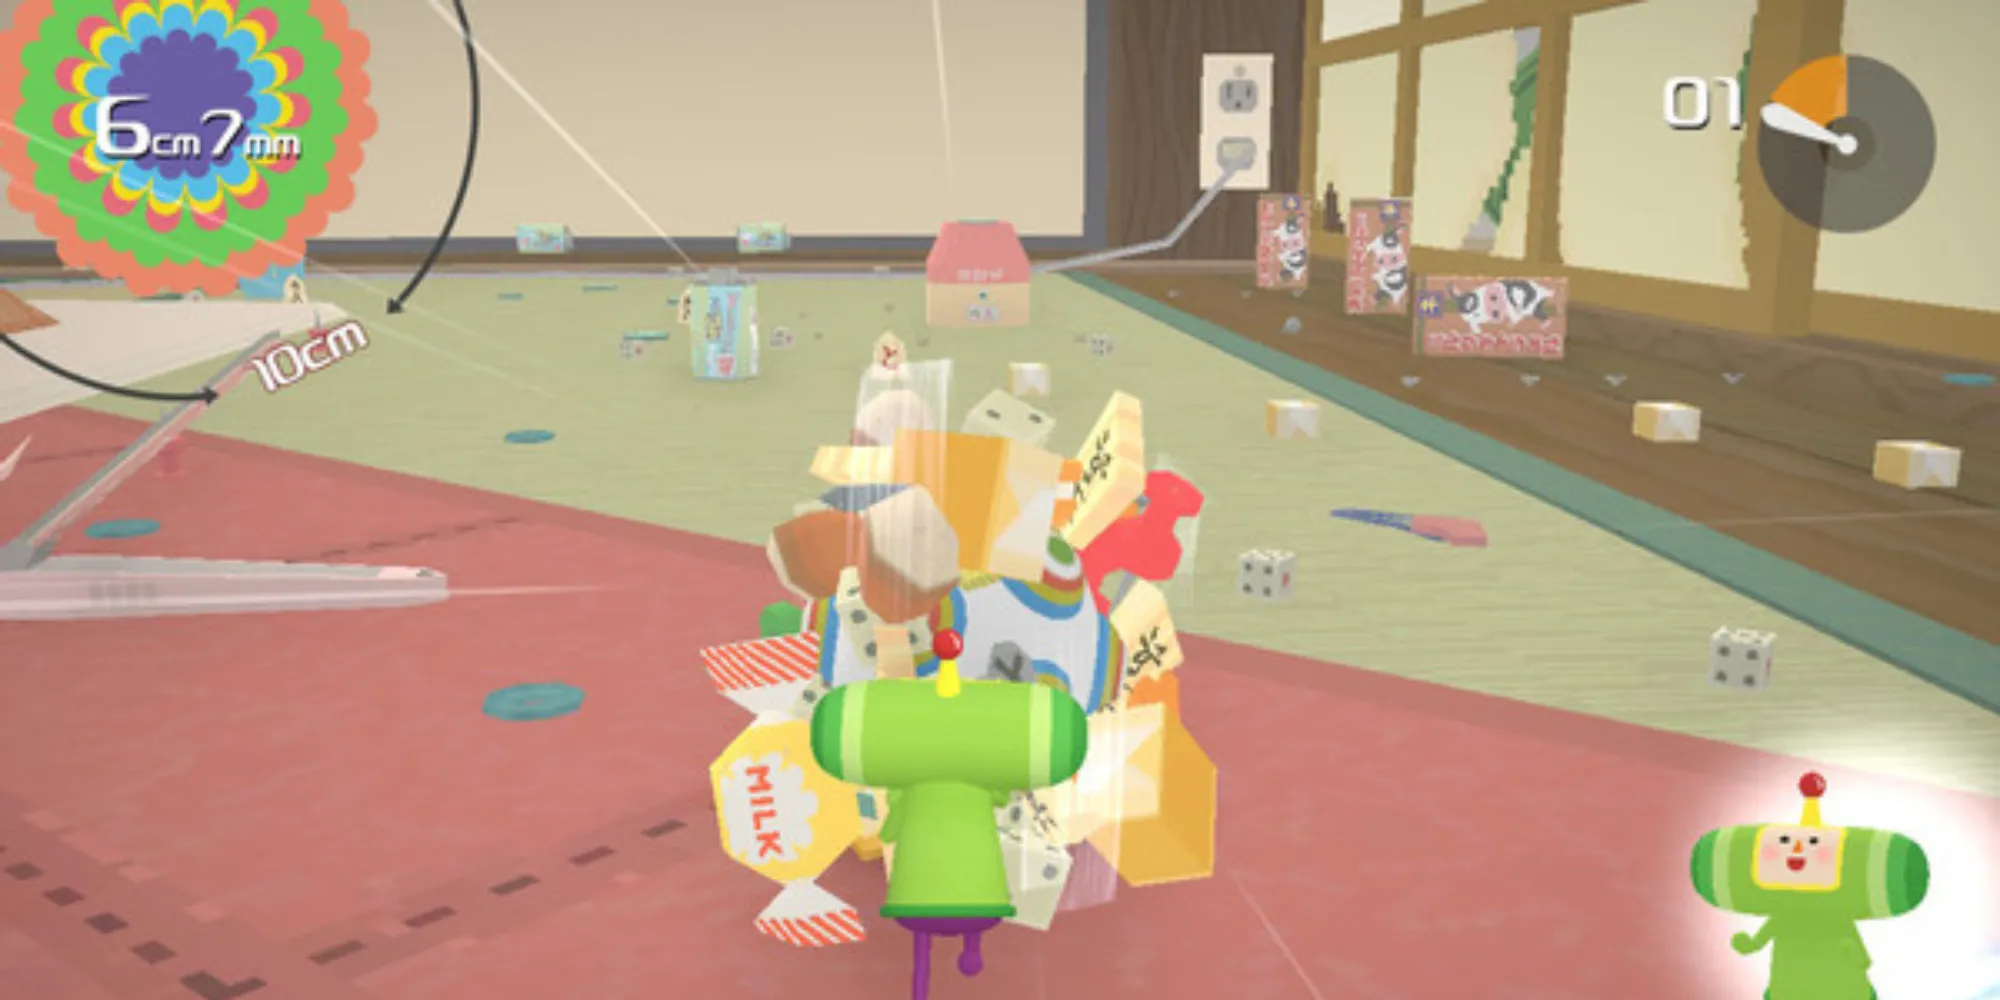 Скриншот с геймплеем из игры Katamari Damacy REROLL